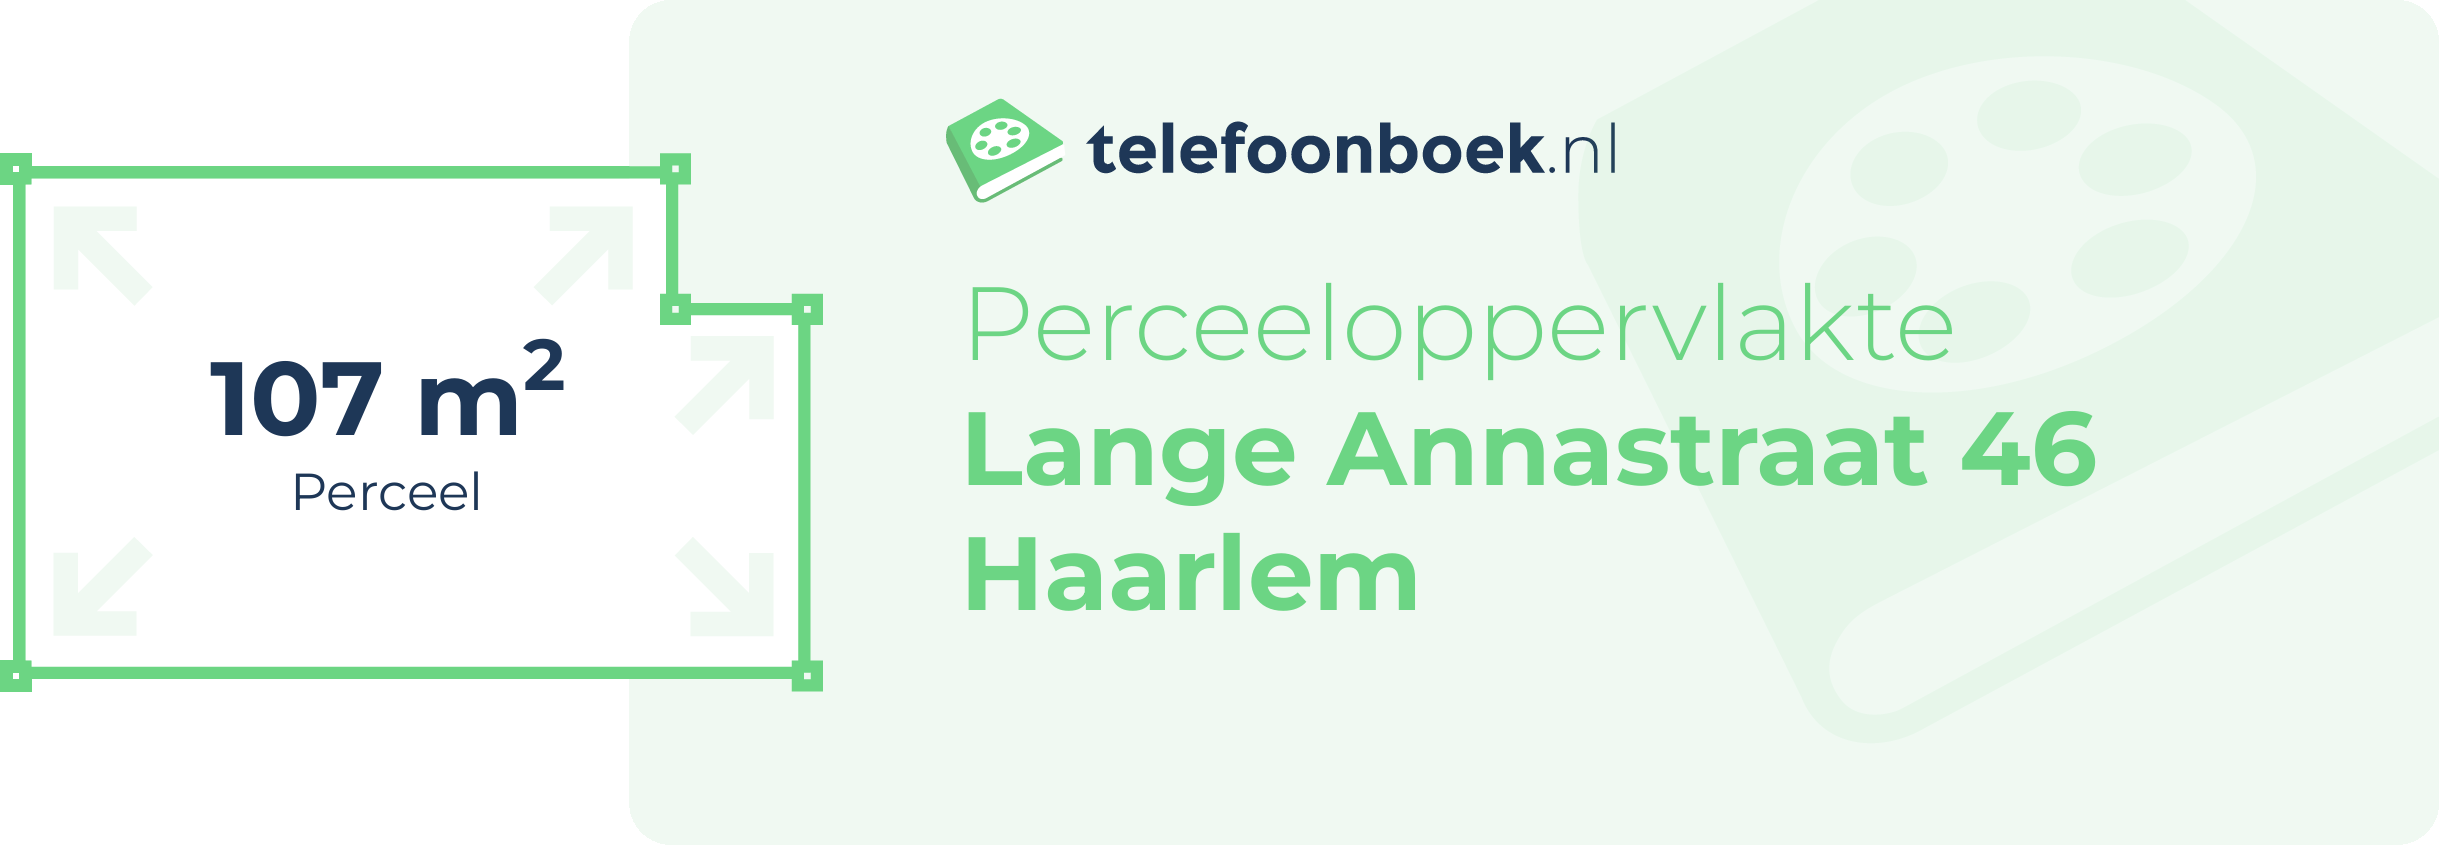 Perceeloppervlakte Lange Annastraat 46 Haarlem